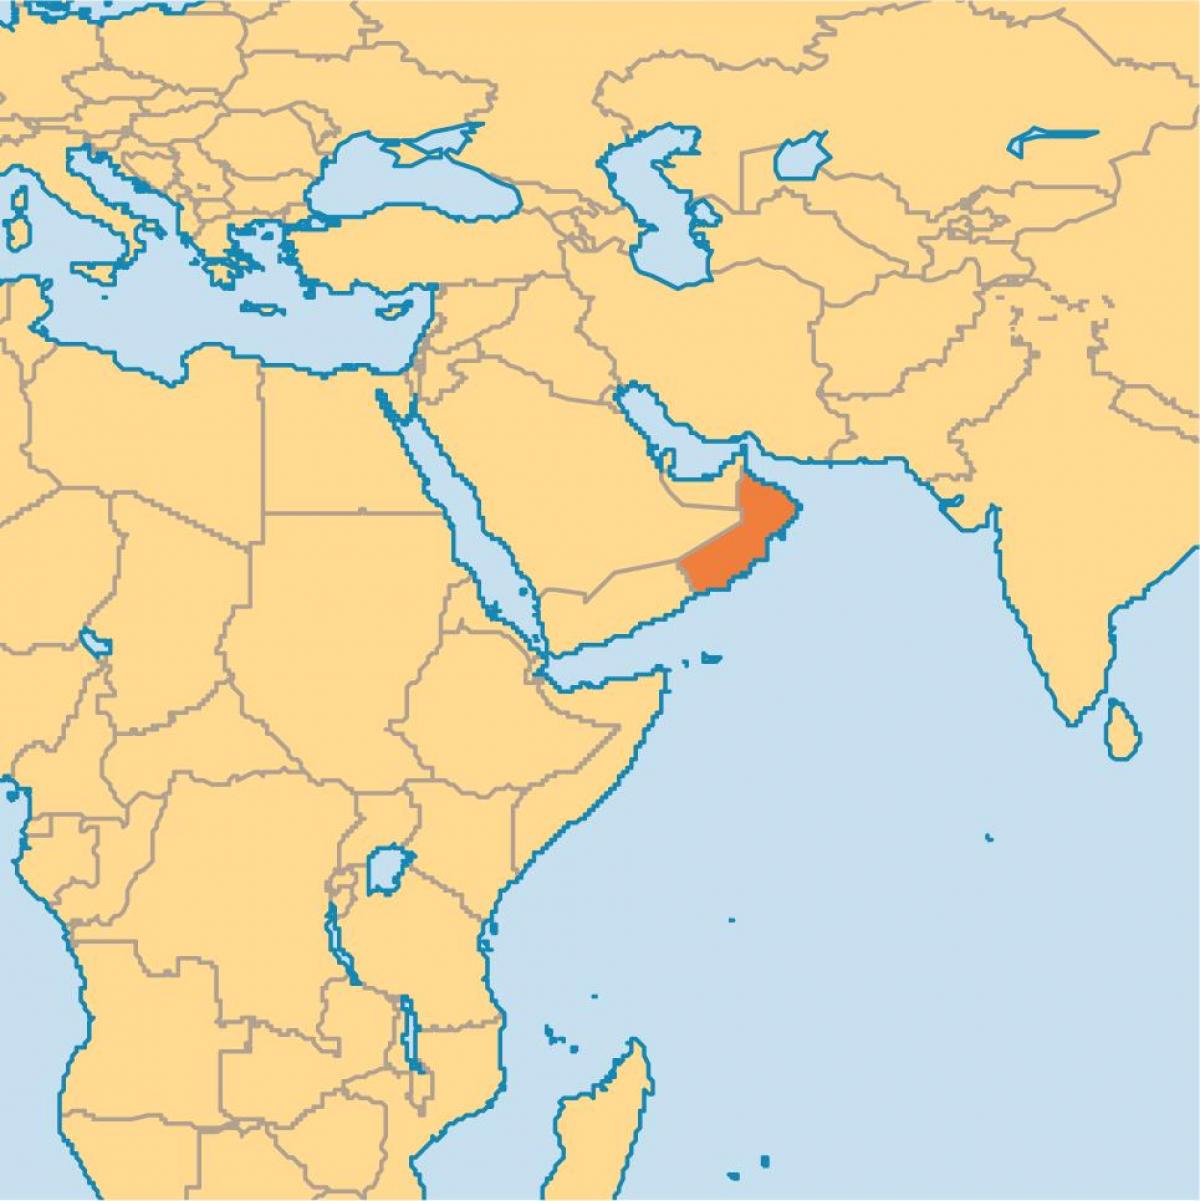 Omana kartu u svijetu mapu